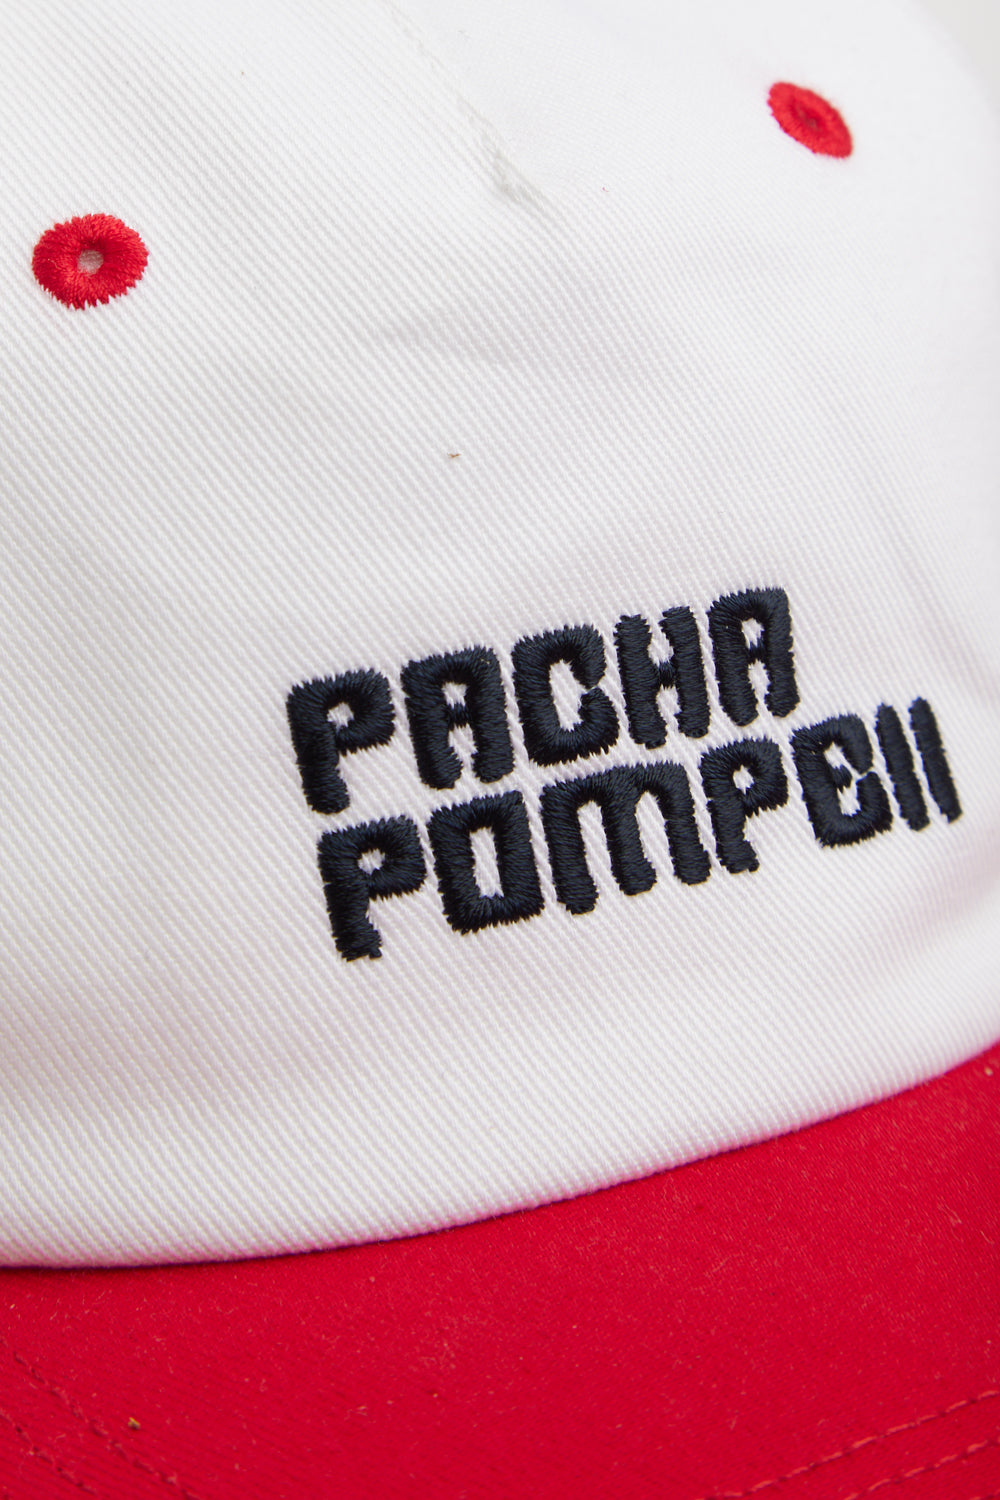 Pacha x Pompeii Weiße Mütze